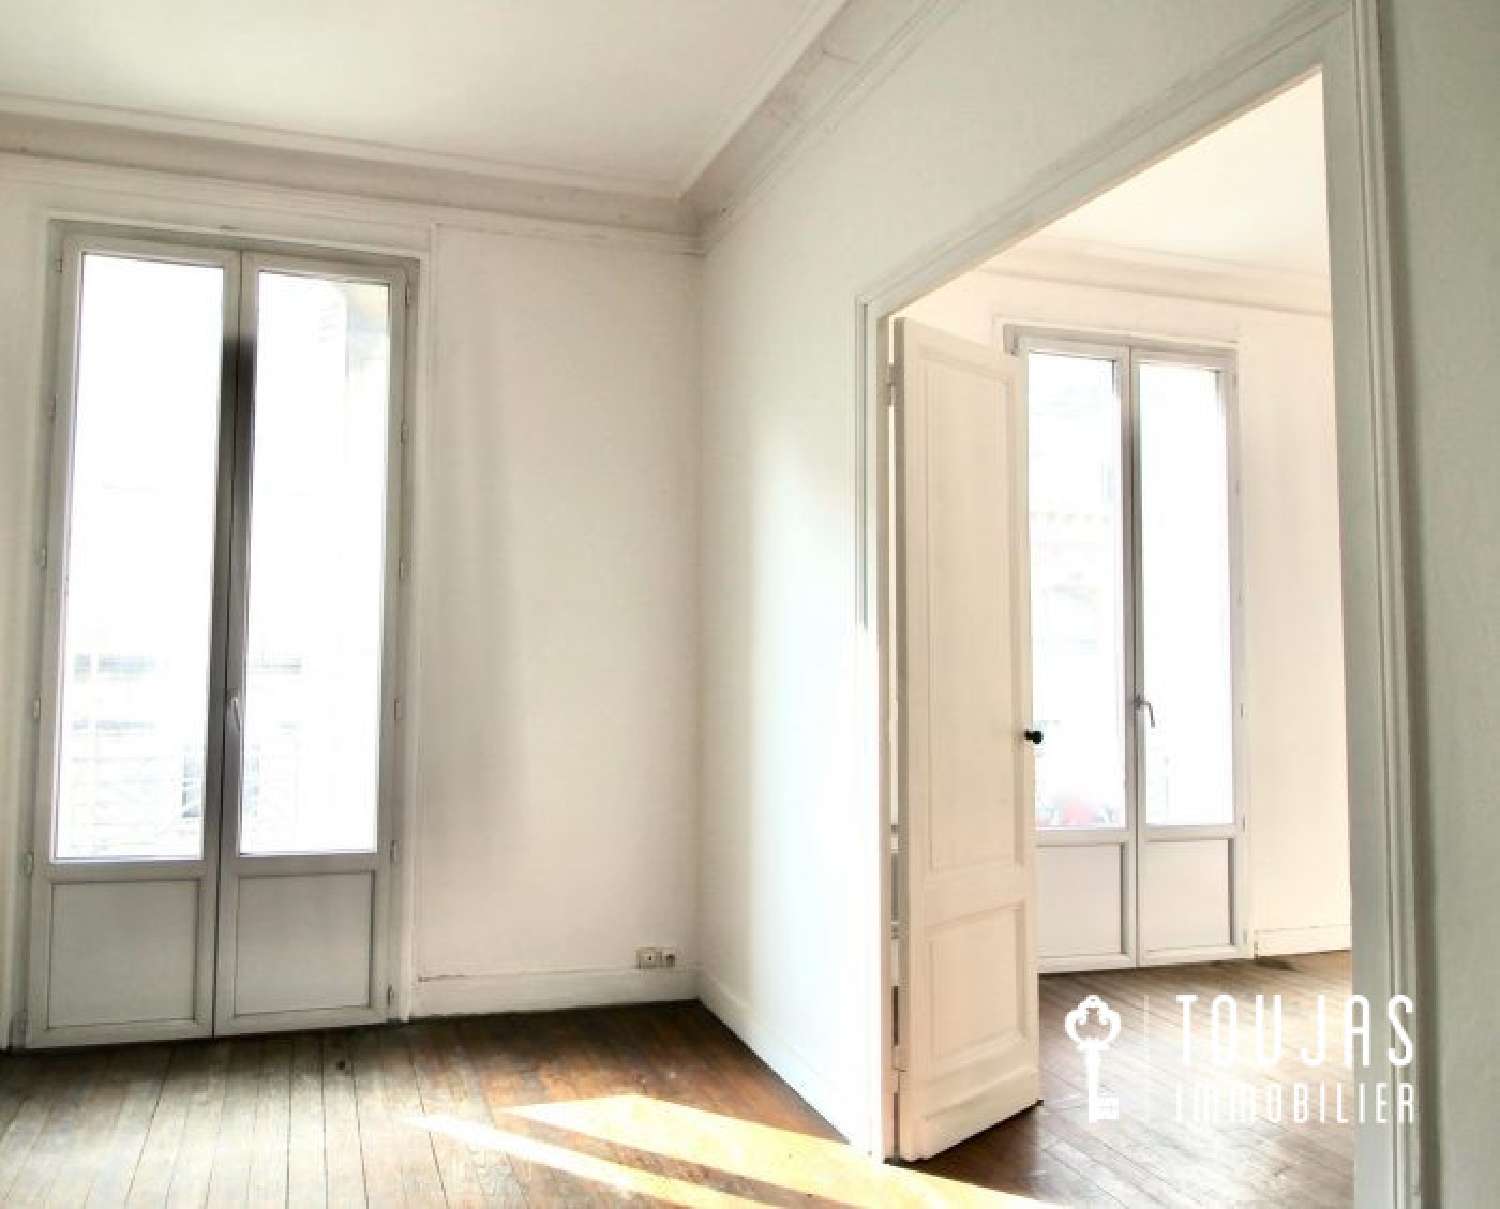  à vendre appartement Bordeaux 33300 Gironde 2